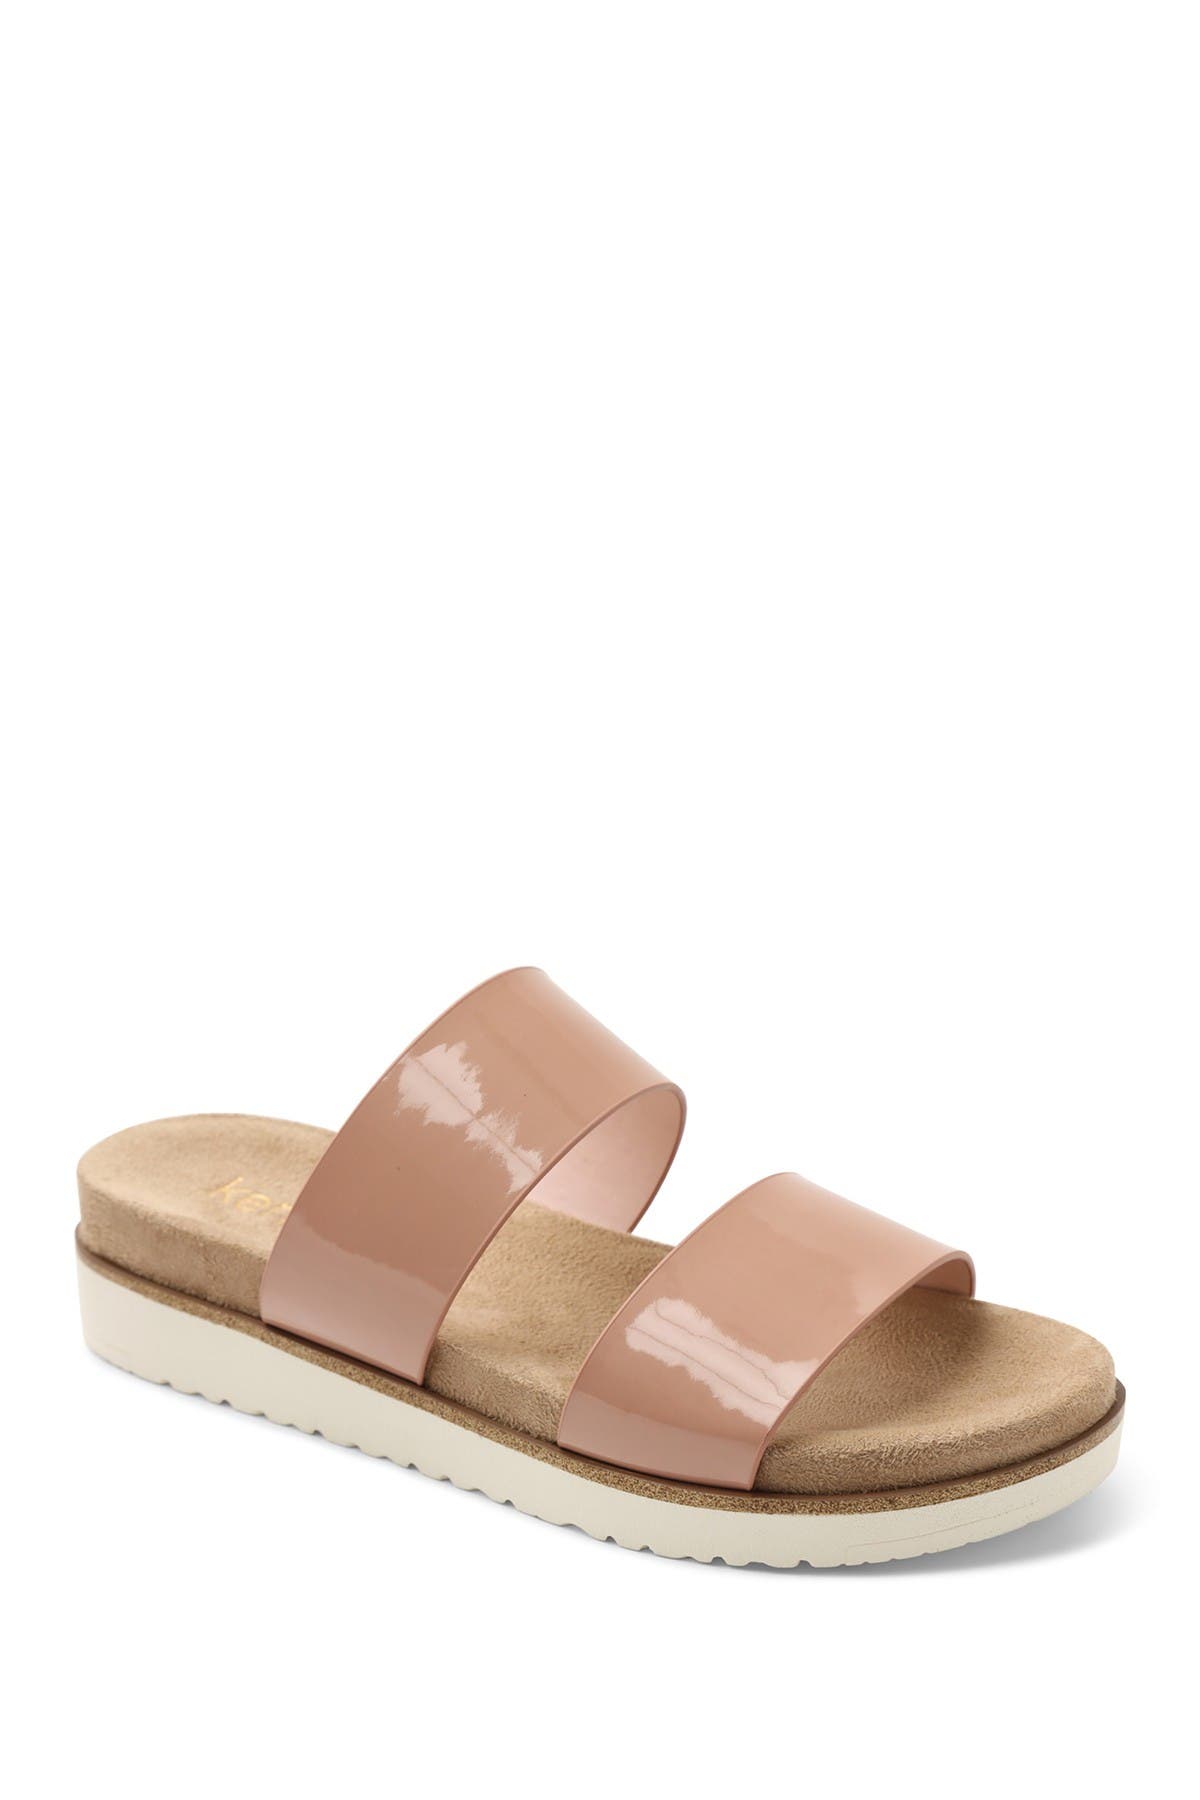 kensie dominic slide sandal